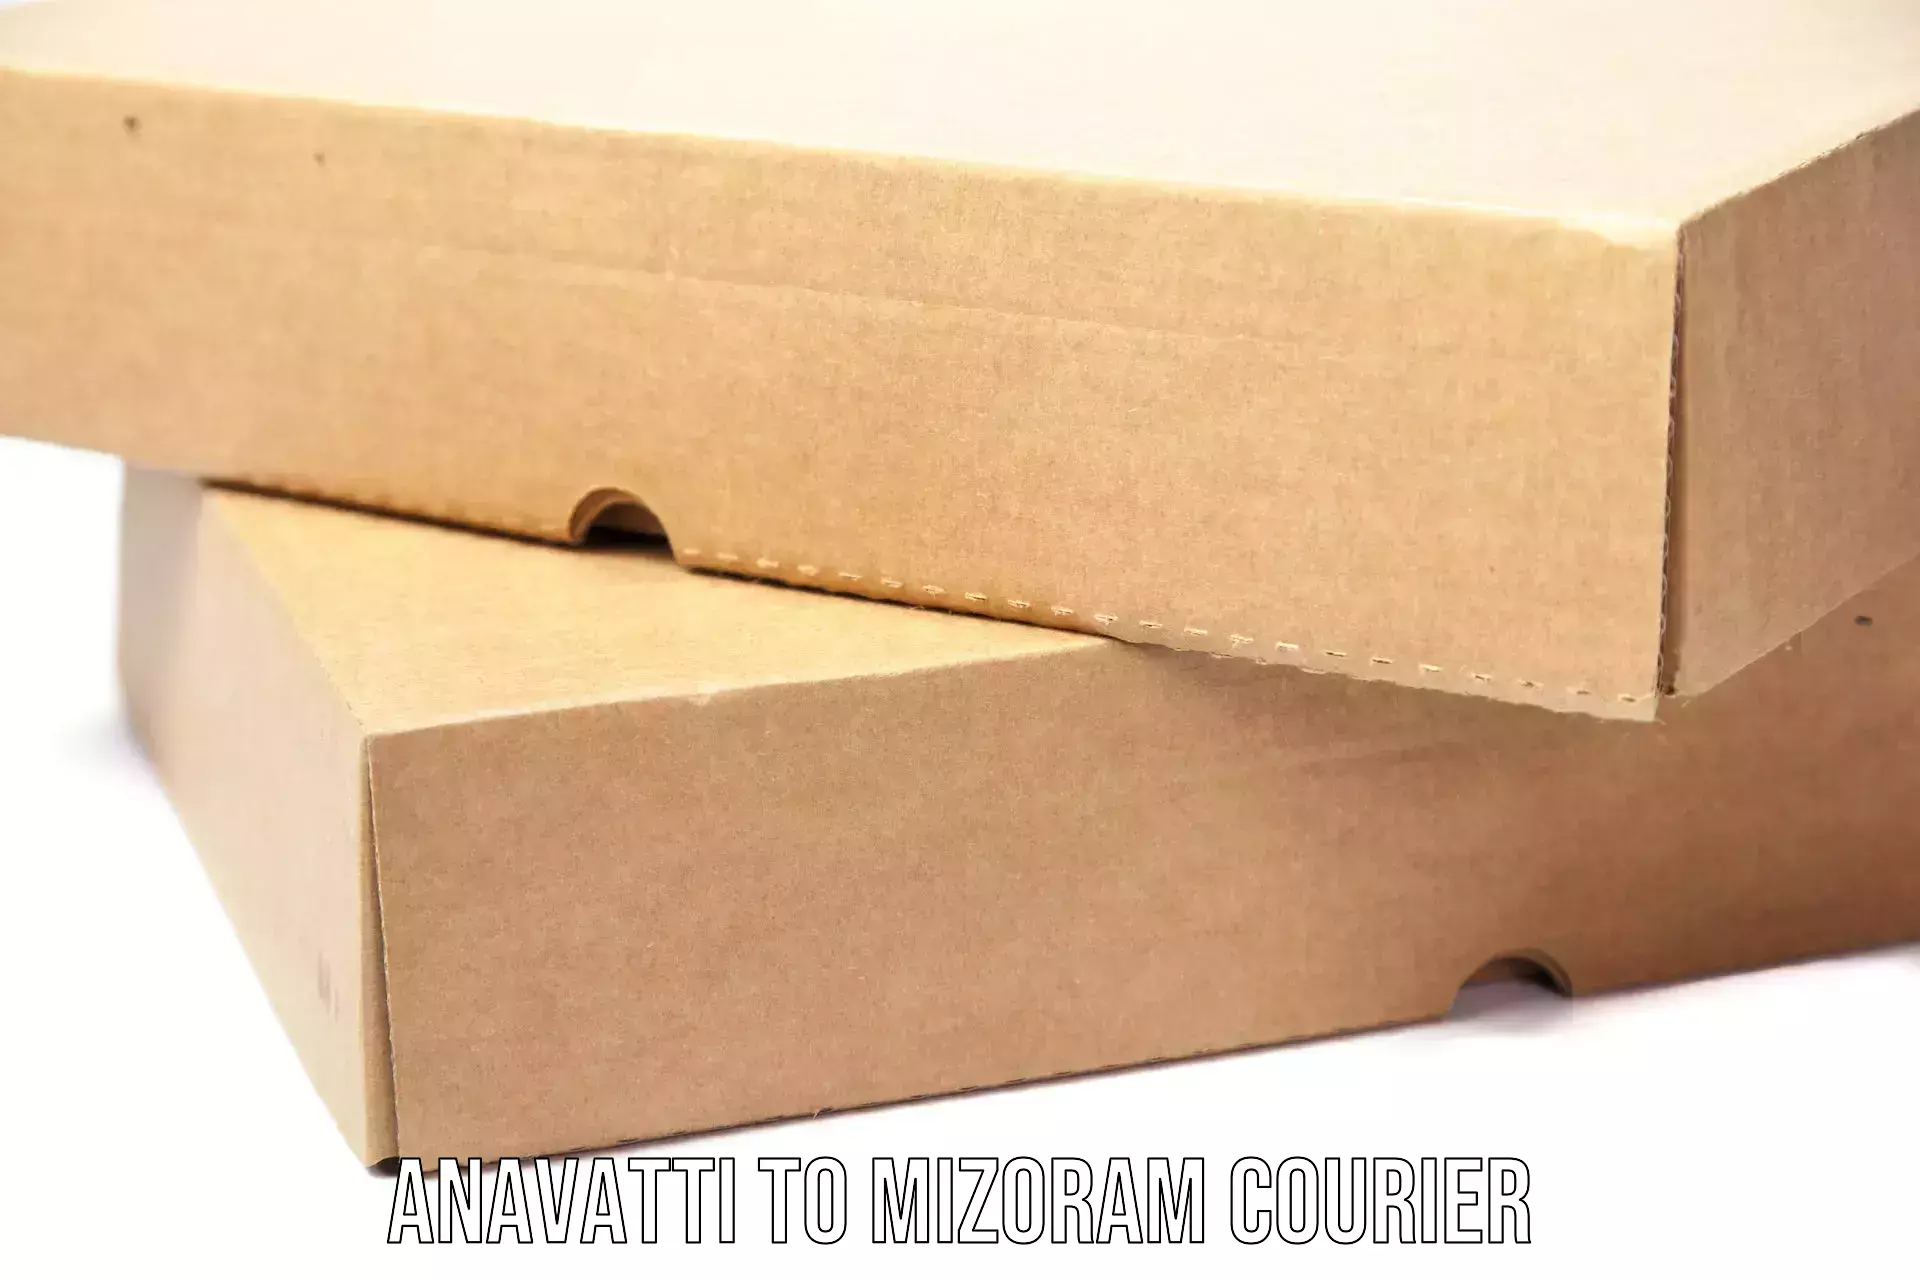 Global courier networks Anavatti to Mizoram